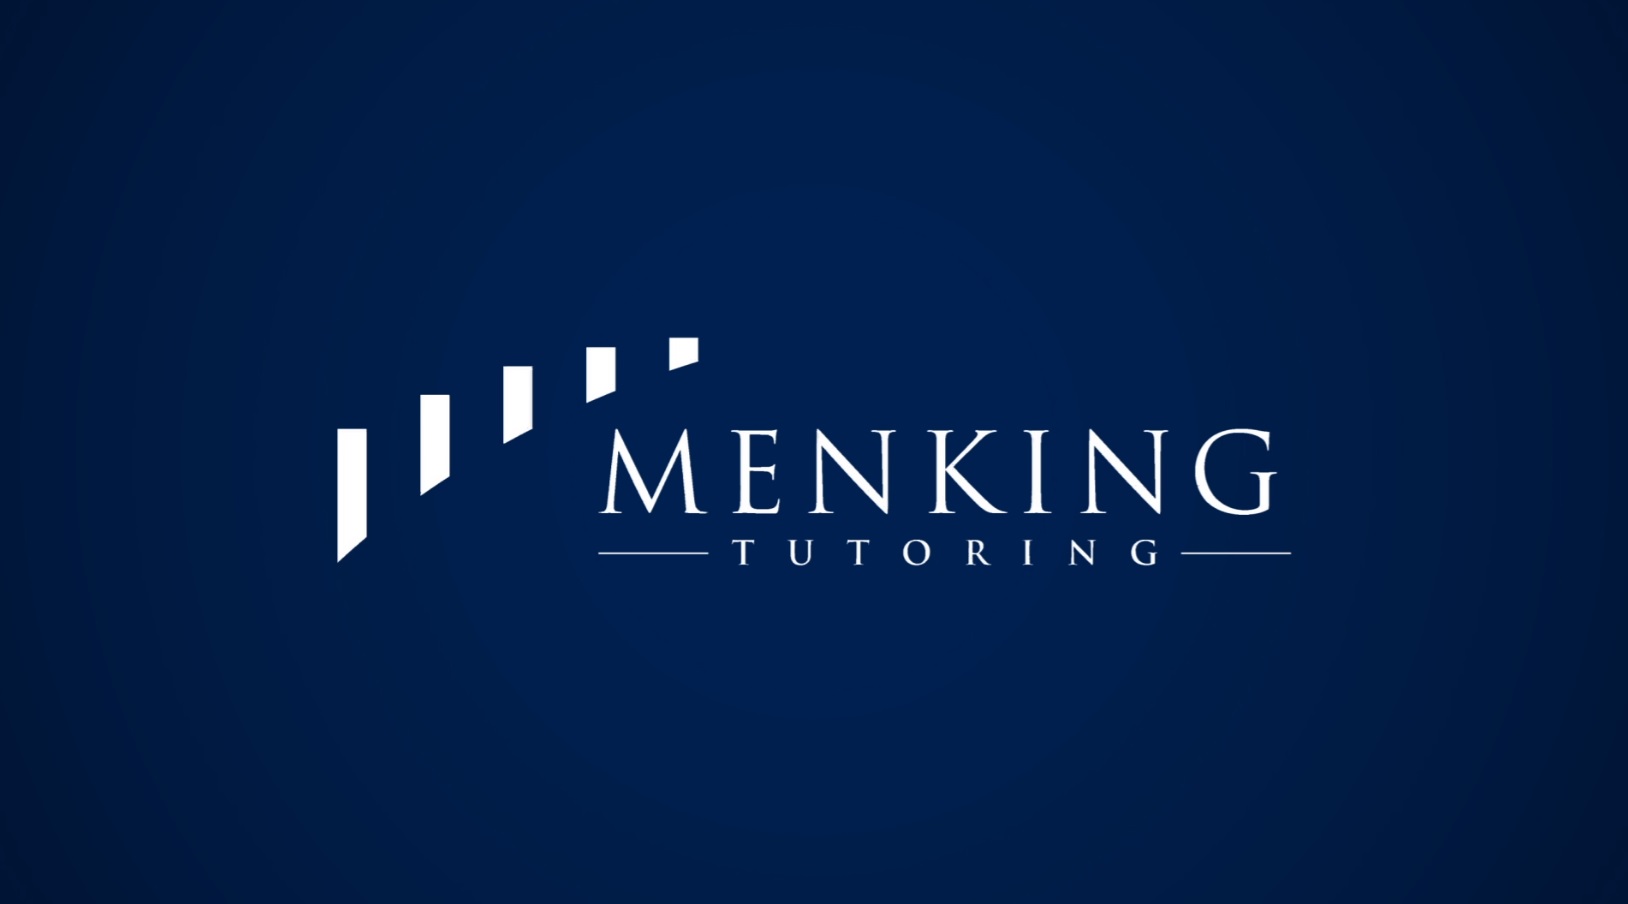 00-01 Welcome To Menking Tutoring